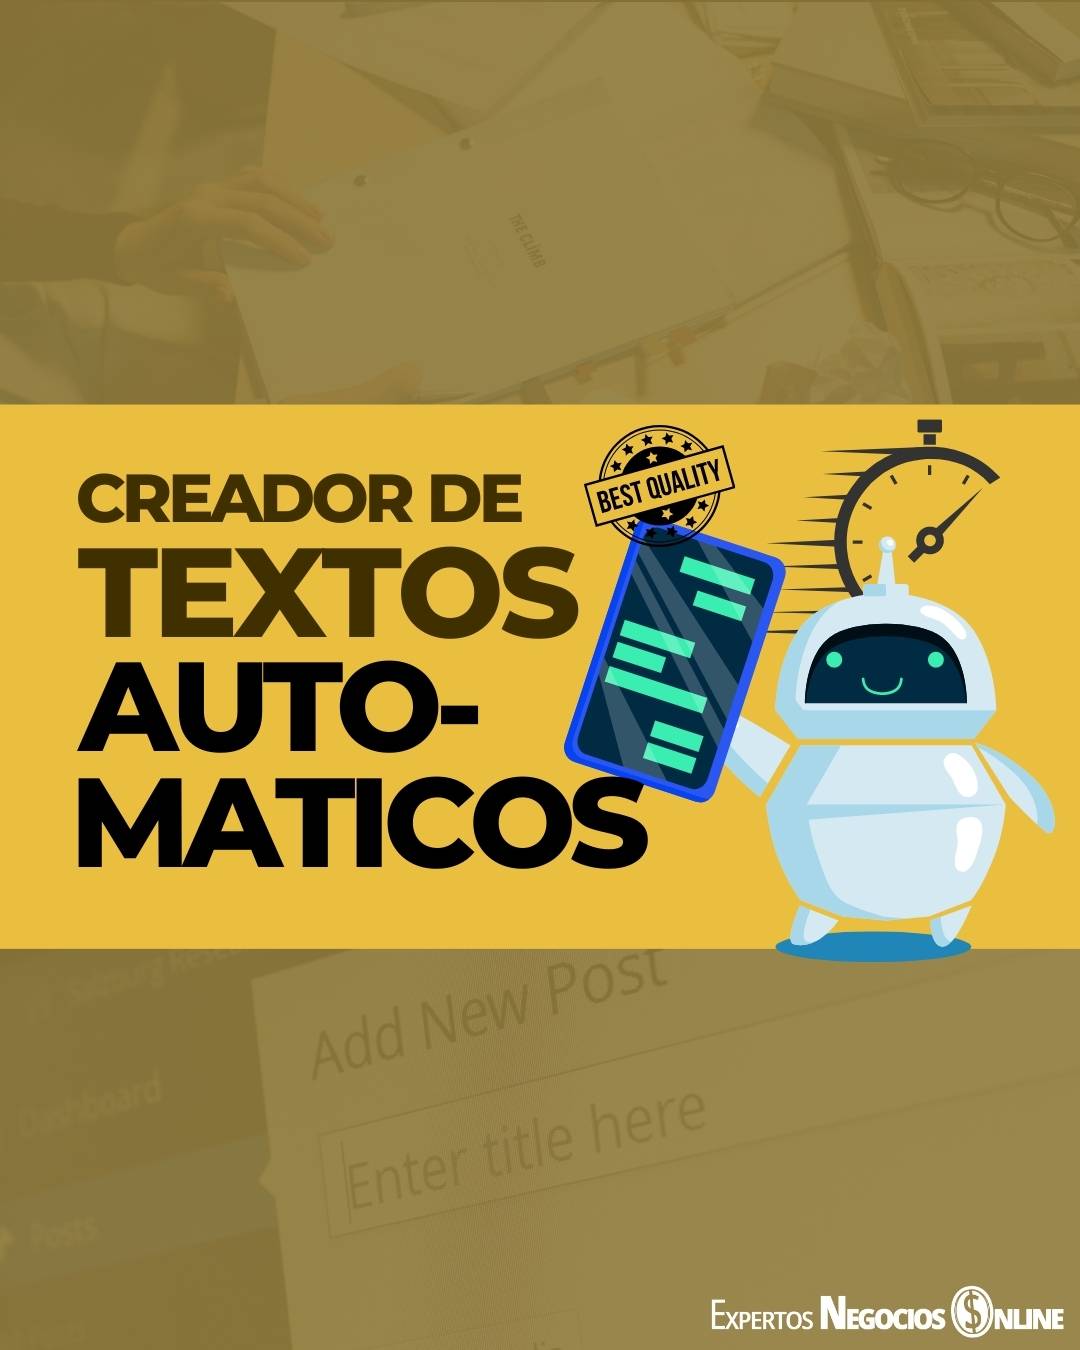 Creador de textos automáticos y redacciones online en español e inglés